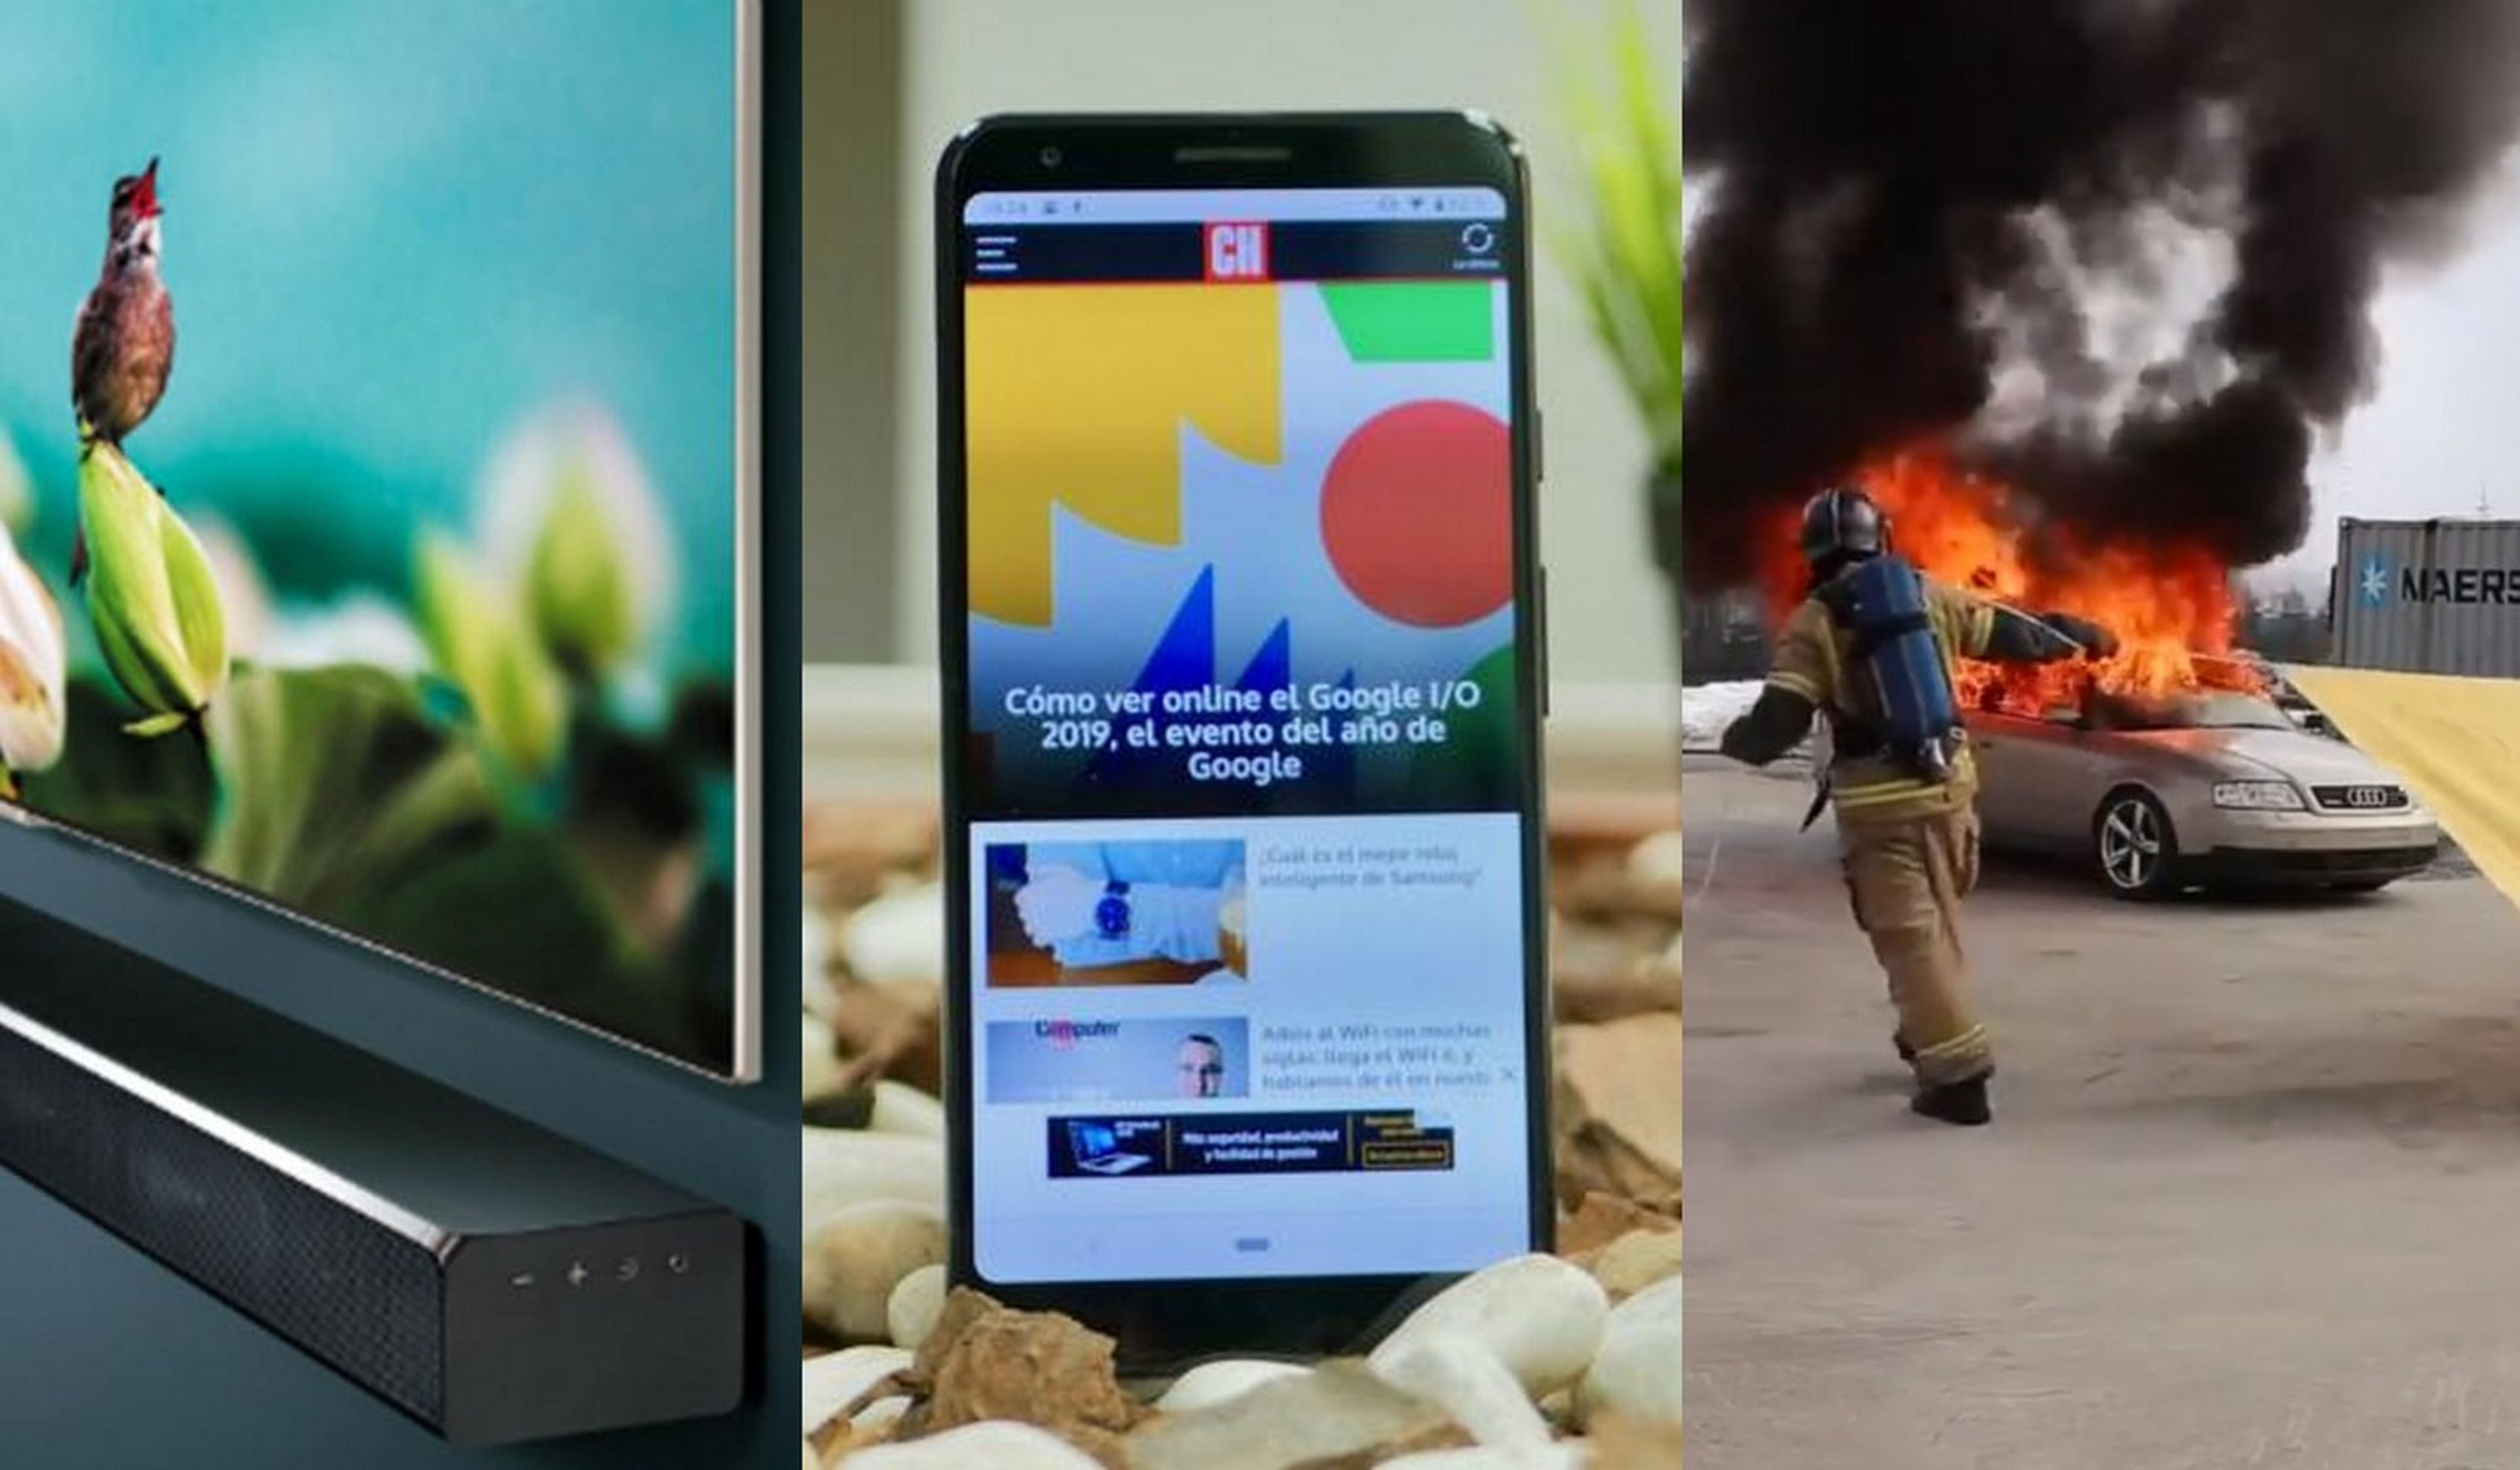 Todo sobre el Pixel 3 barato de Google, Android Q y más noticias tecnológicas resumidas